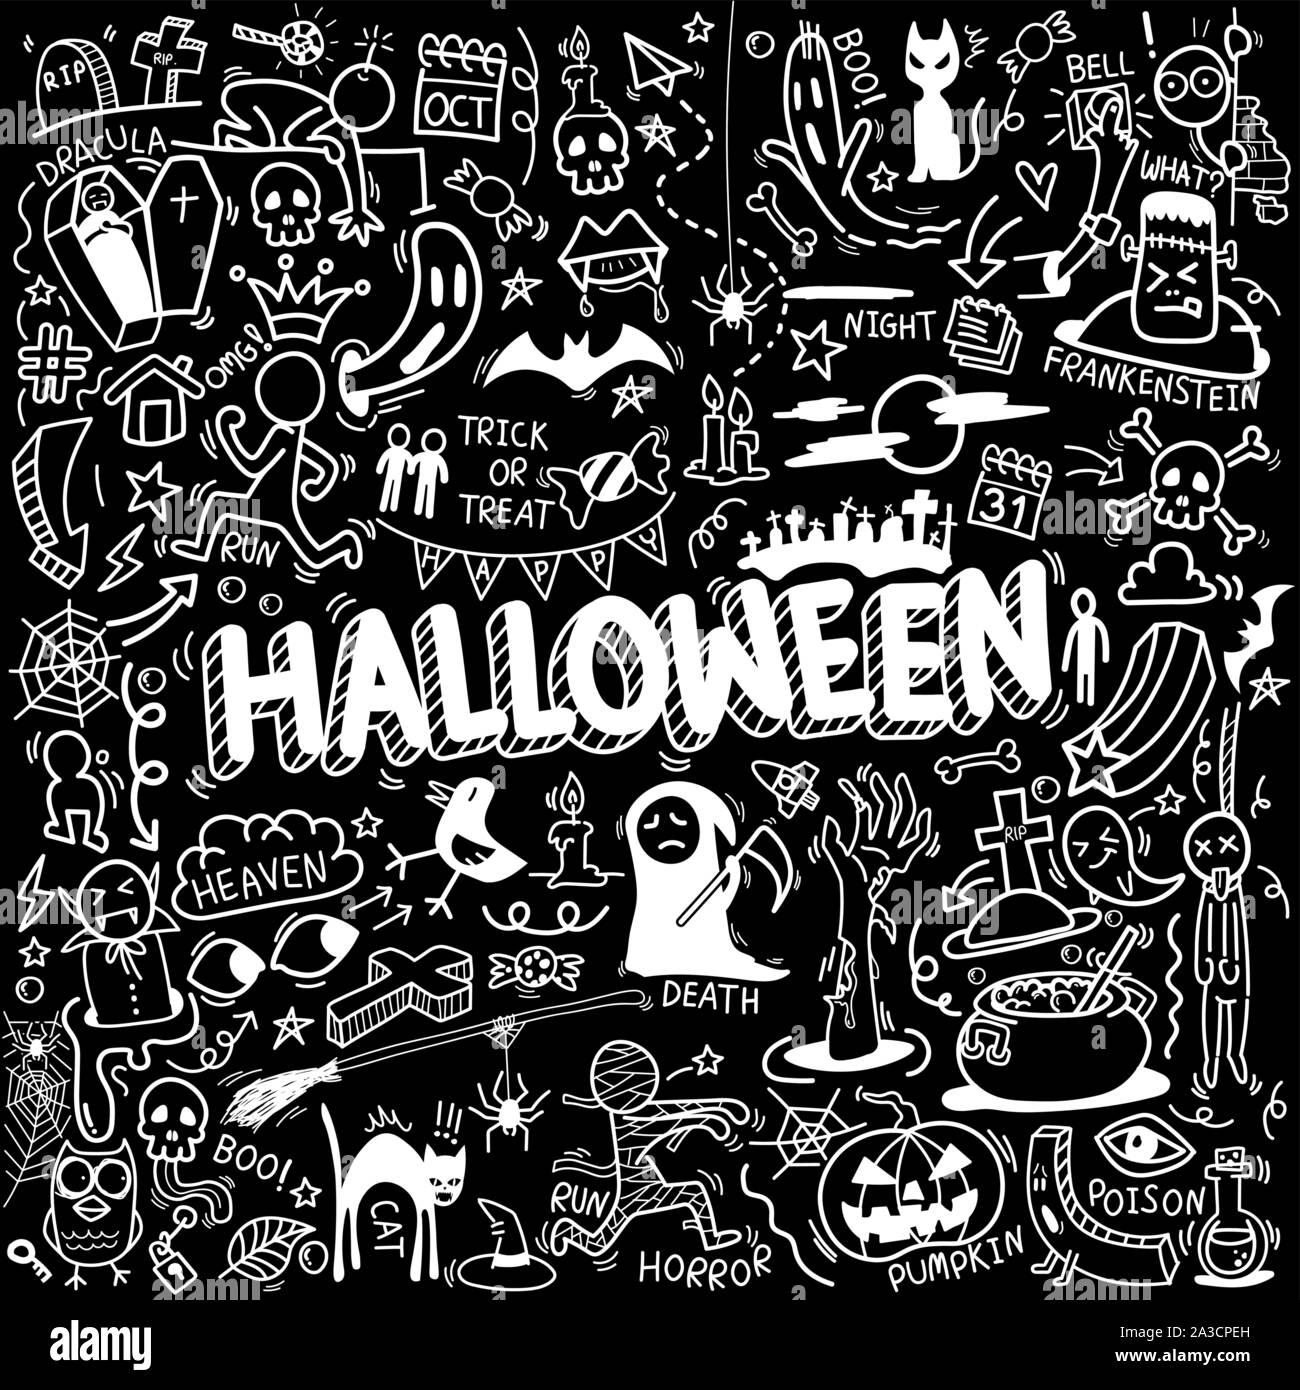 Vektor von Hand gezeichnet Doodle cartoon Satz von Objekten und Symbole auf der Halloween Theme Stock Vektor